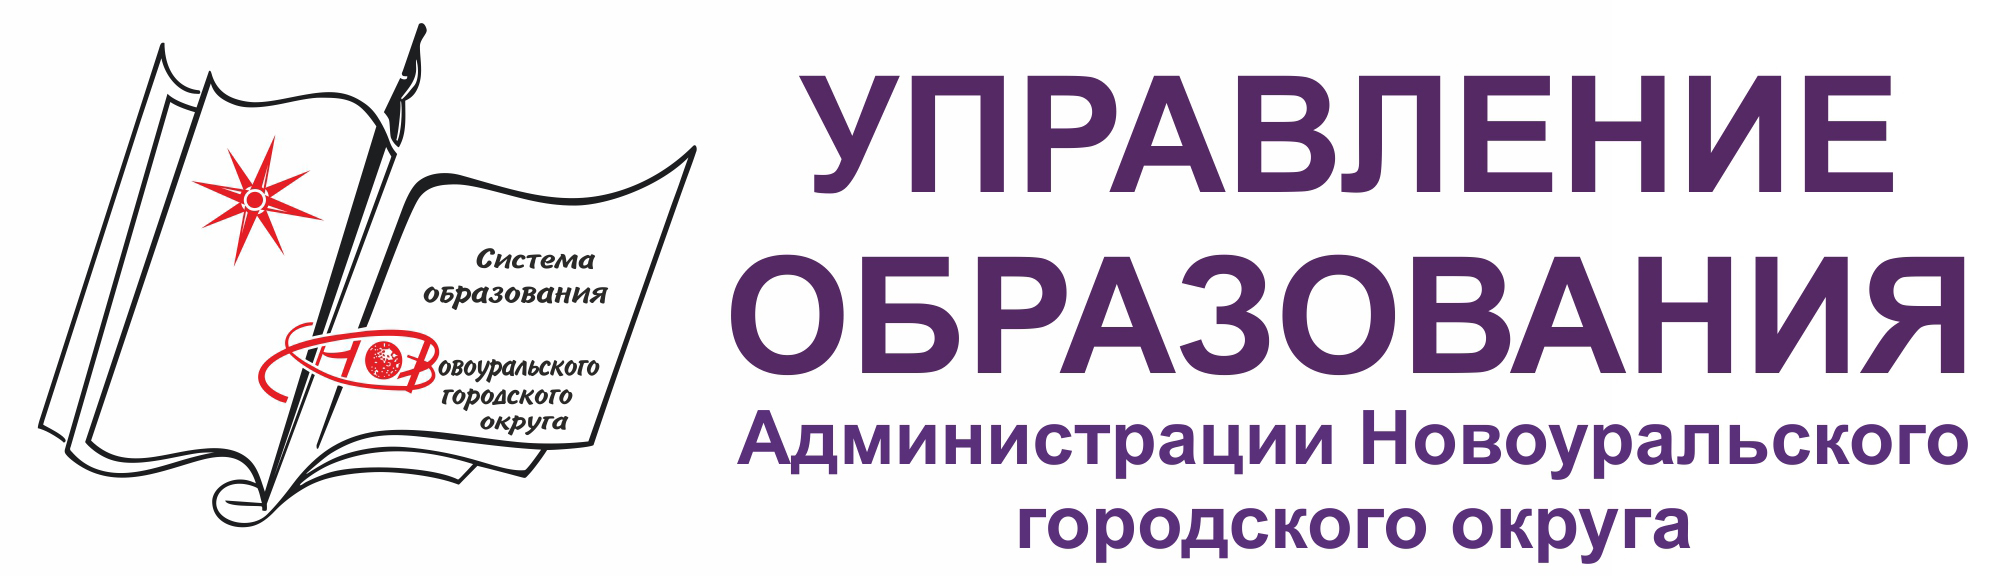 Управление образования Новоуральского городского округа